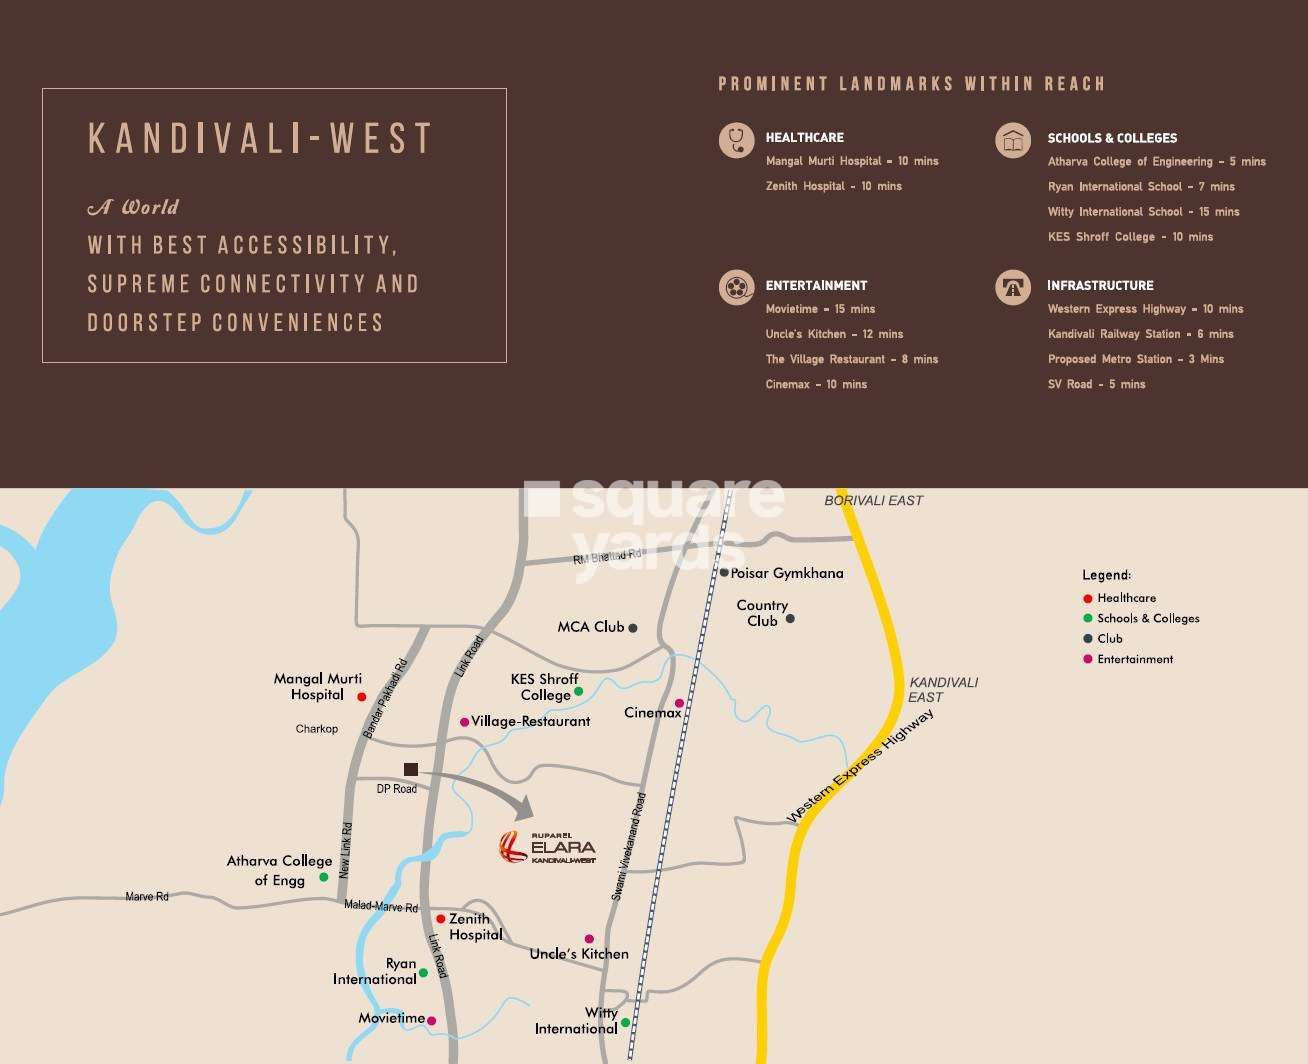 ruparel elara mumbai project location image1 4913